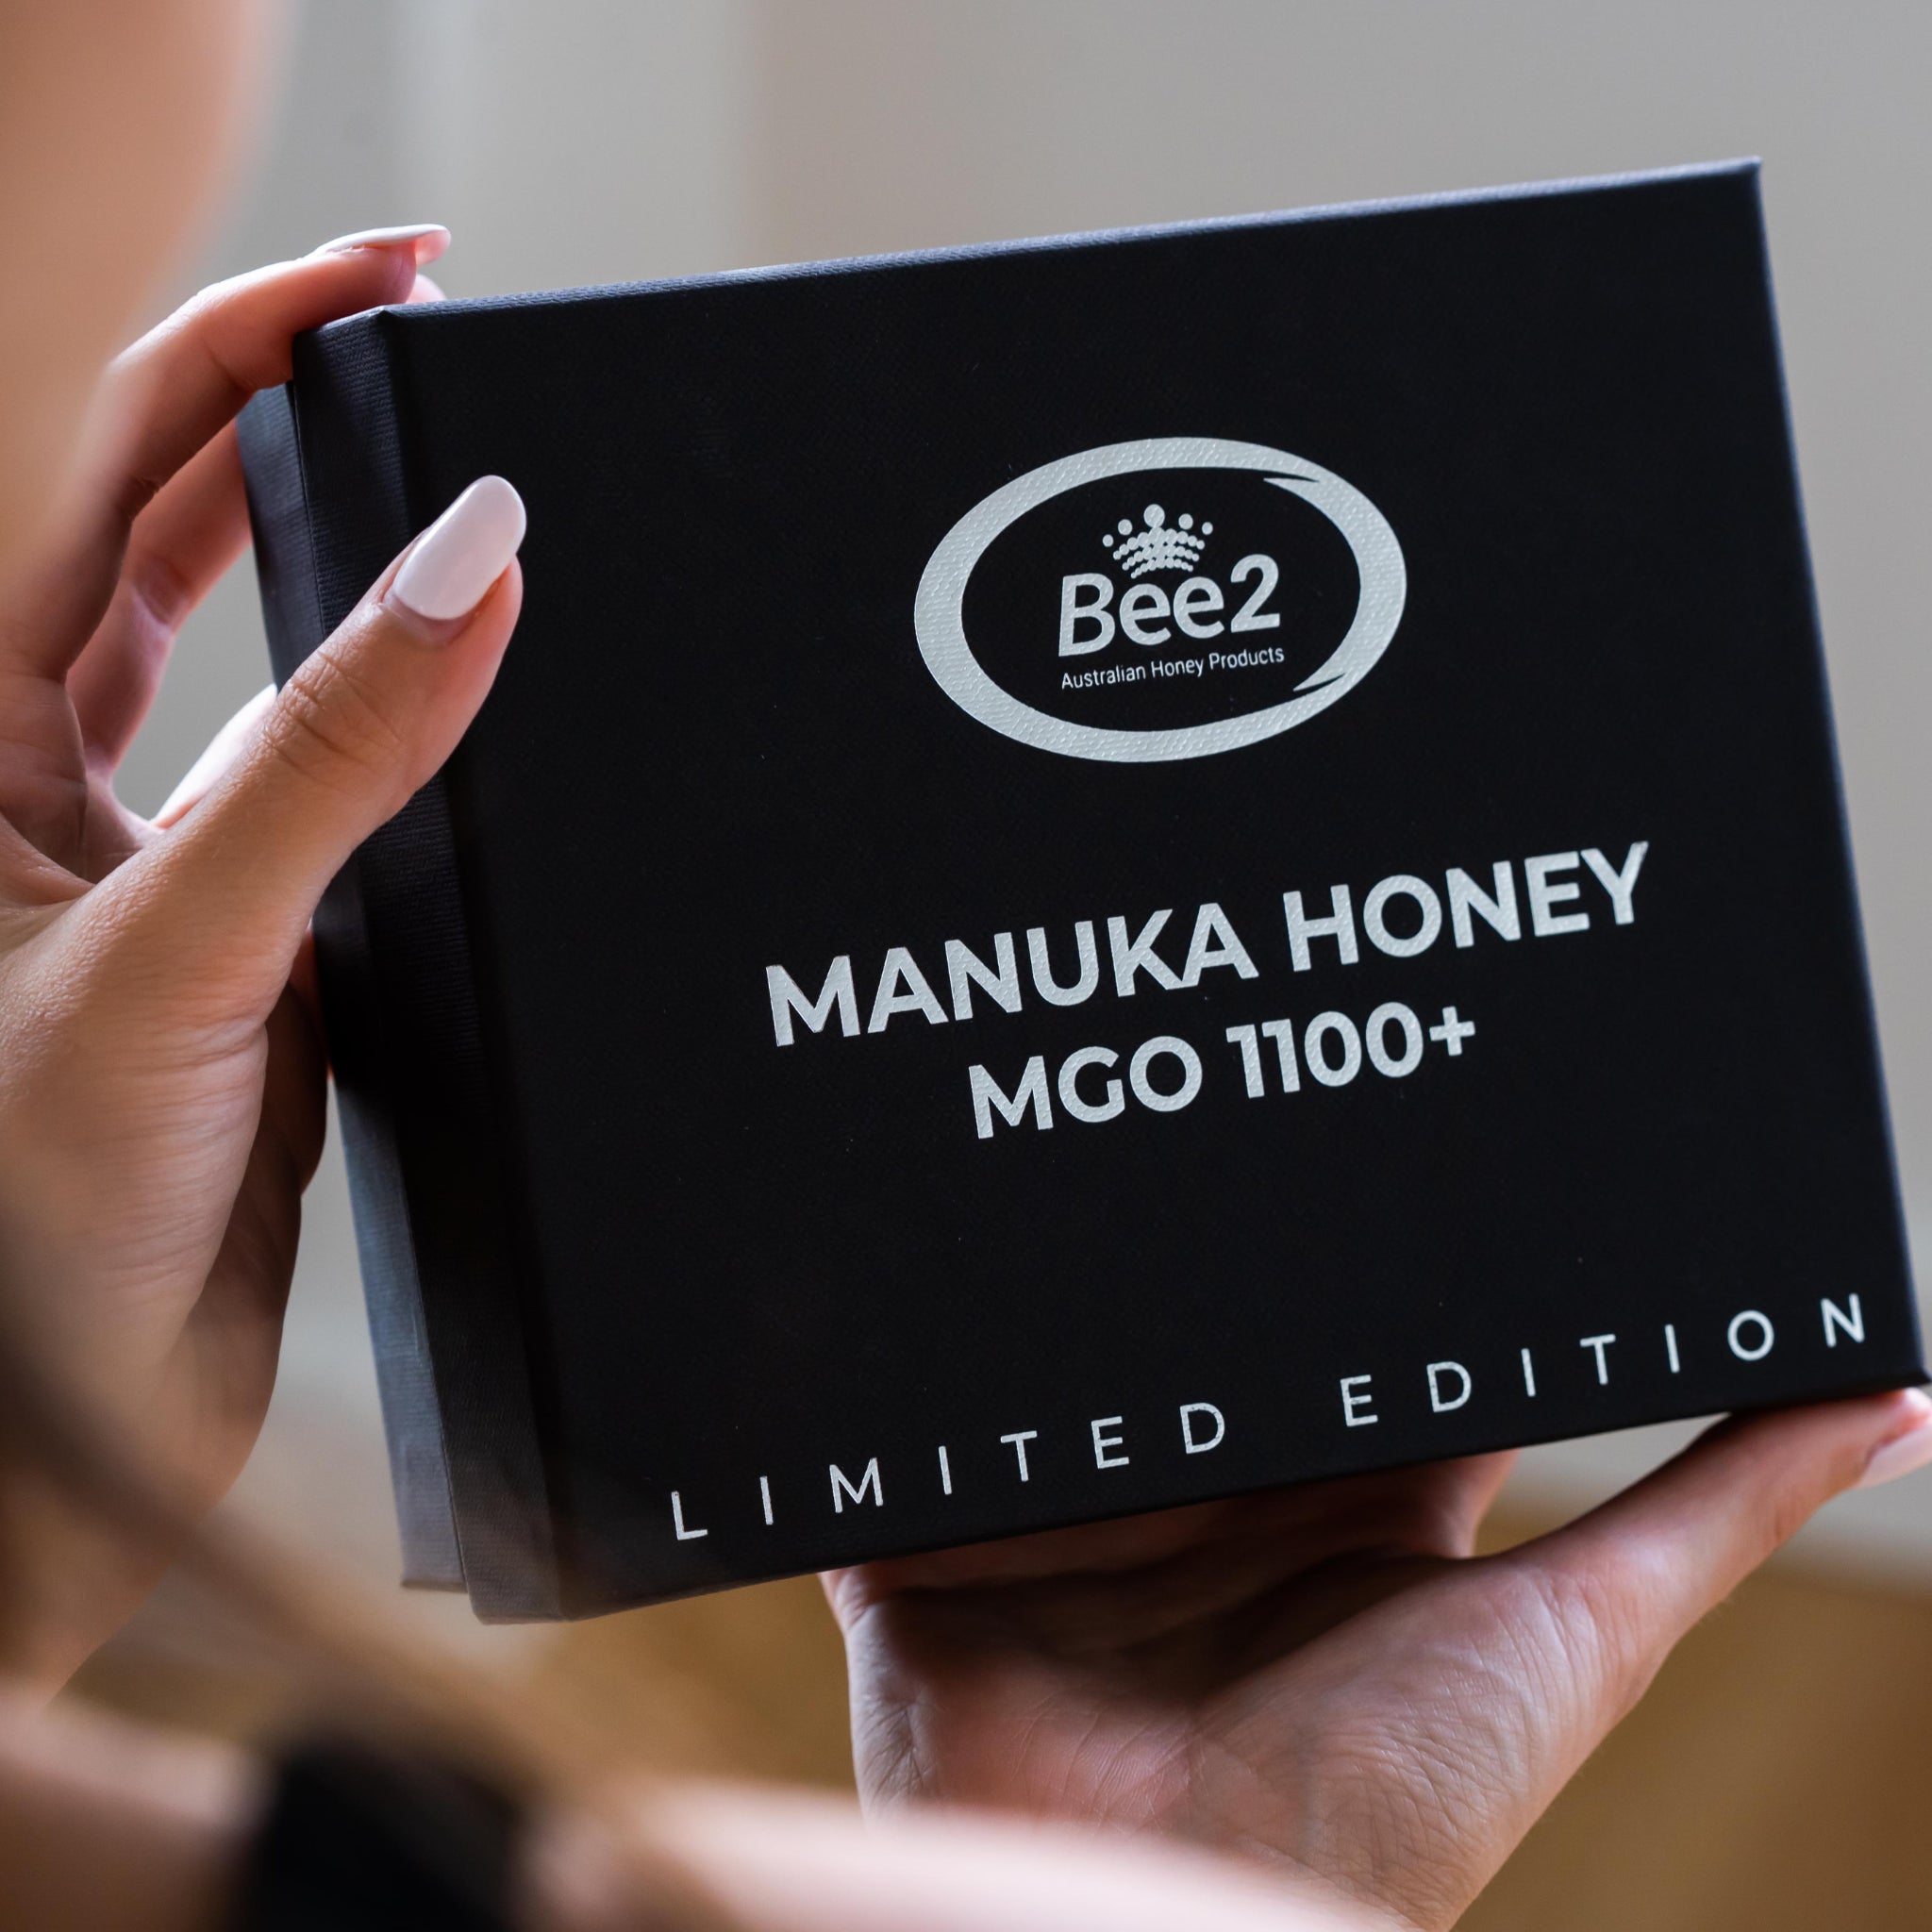 Bee2 Manuka Honey Straws MGO 1100+